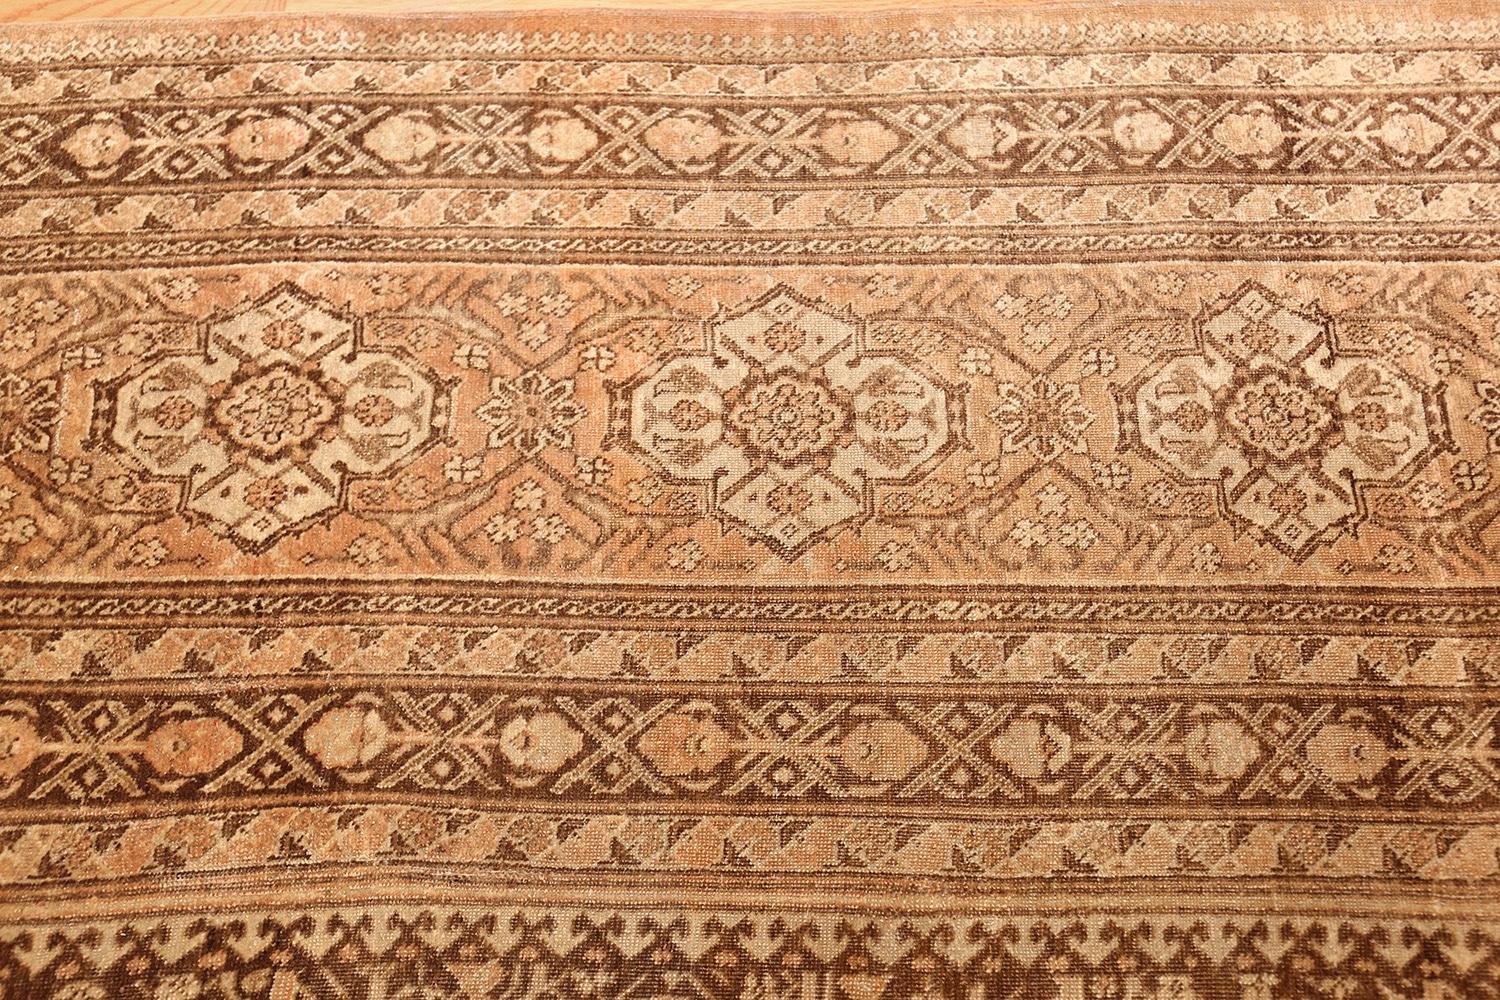 Feiner und dekorativer antiker persischer Täbris-Teppich, Herkunftsland: Persien, CIRCA Datum: 1900. Größe: 10 ft x 15 ft 2 in (3,05 m x 4,62 m)

